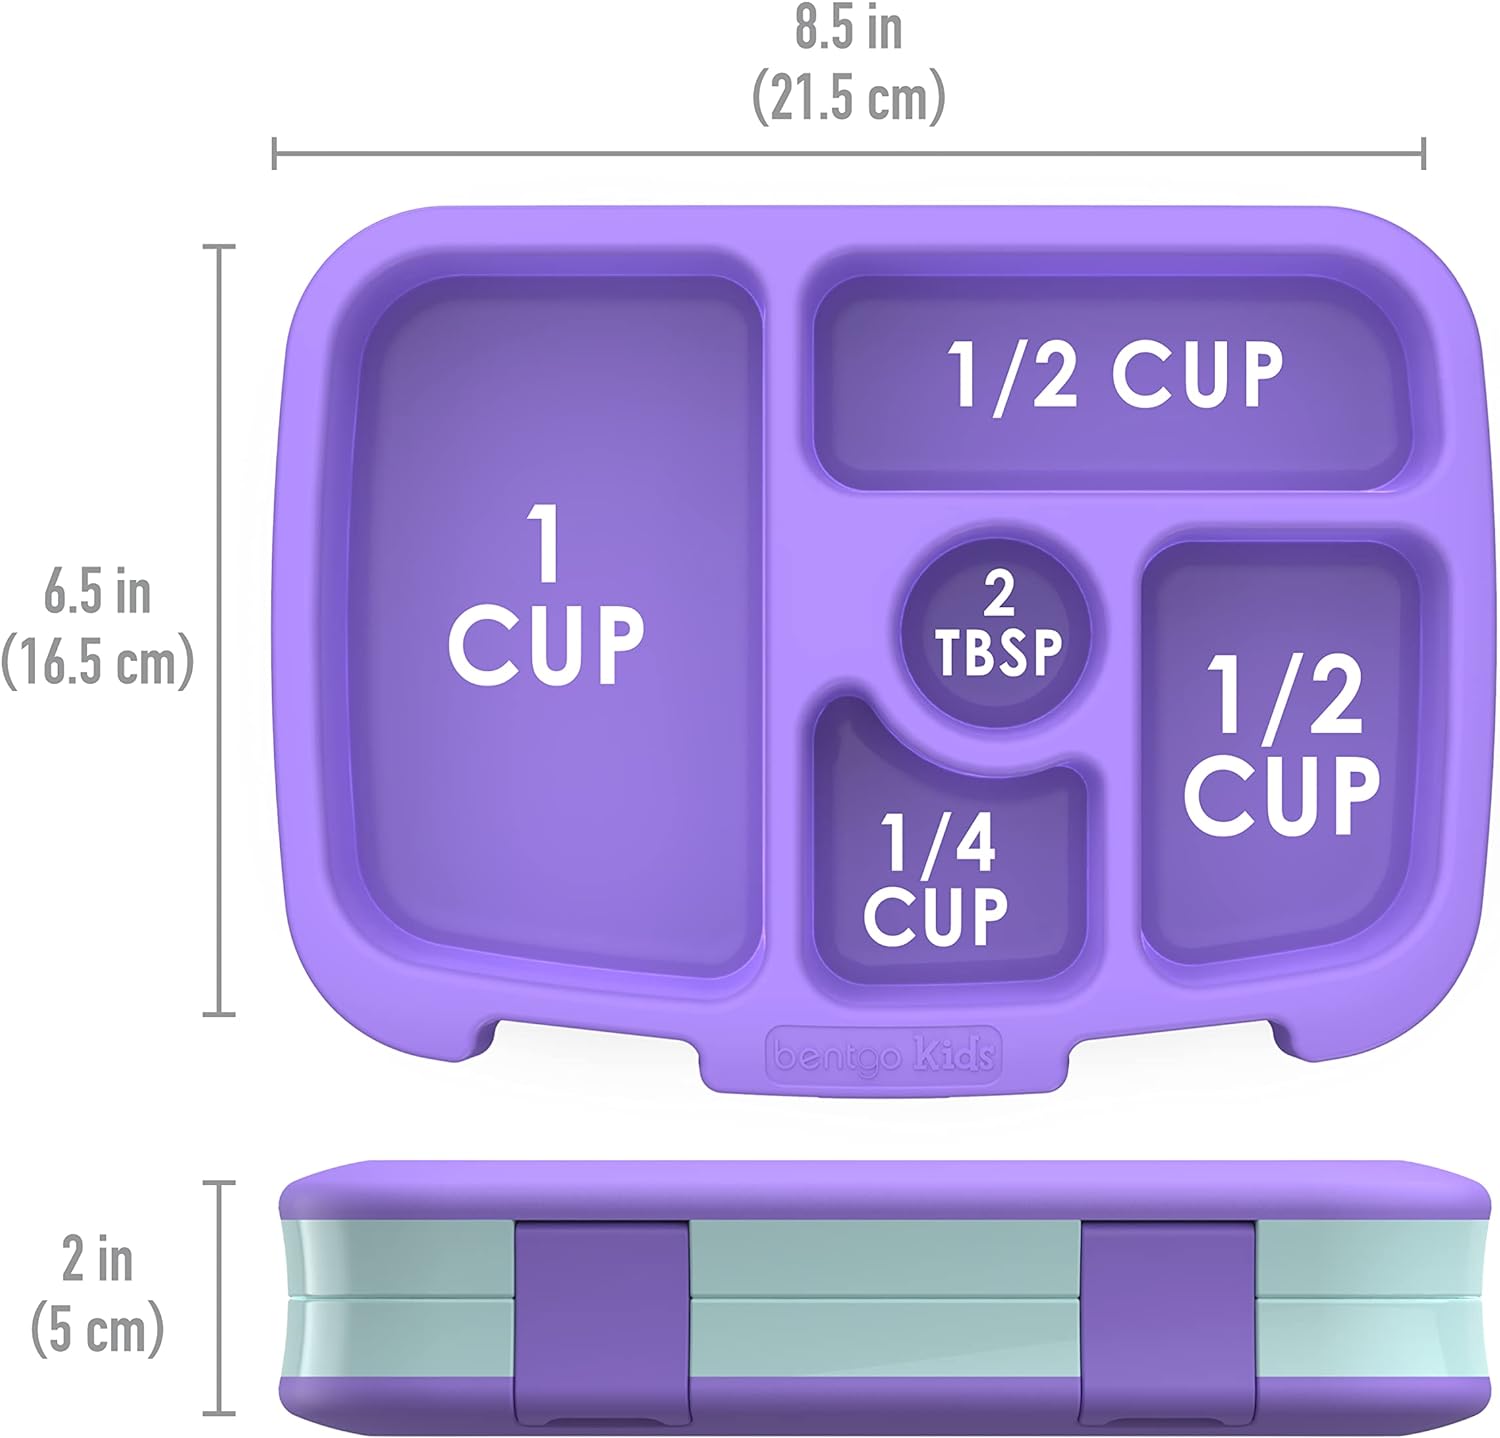 صندوق طعام مطبوع للاطفال من بنتجو، مقاوم للتسرب مقسم الى 5 اجزاء مناسب لعمر من 3 الى 7 سنوات، خال من مادة BPA وامن للاستخدام في غسالة الصحون مصنوع من مواد امنة غذائيًا- مجموعة 2022 (ارجواني فاتح)